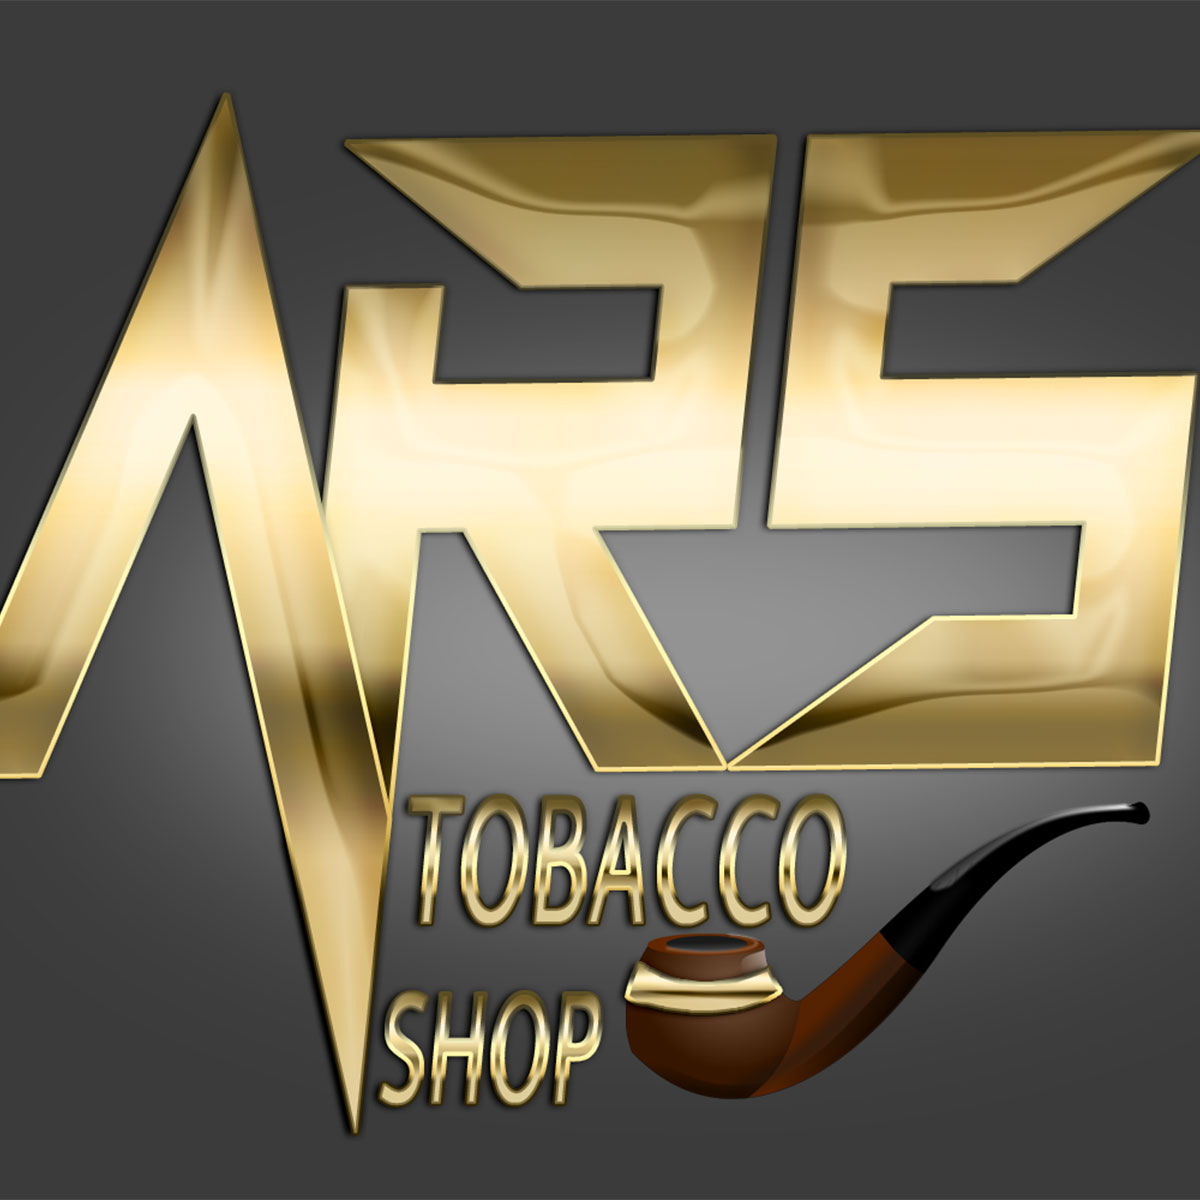 Ars Tobacco Shop